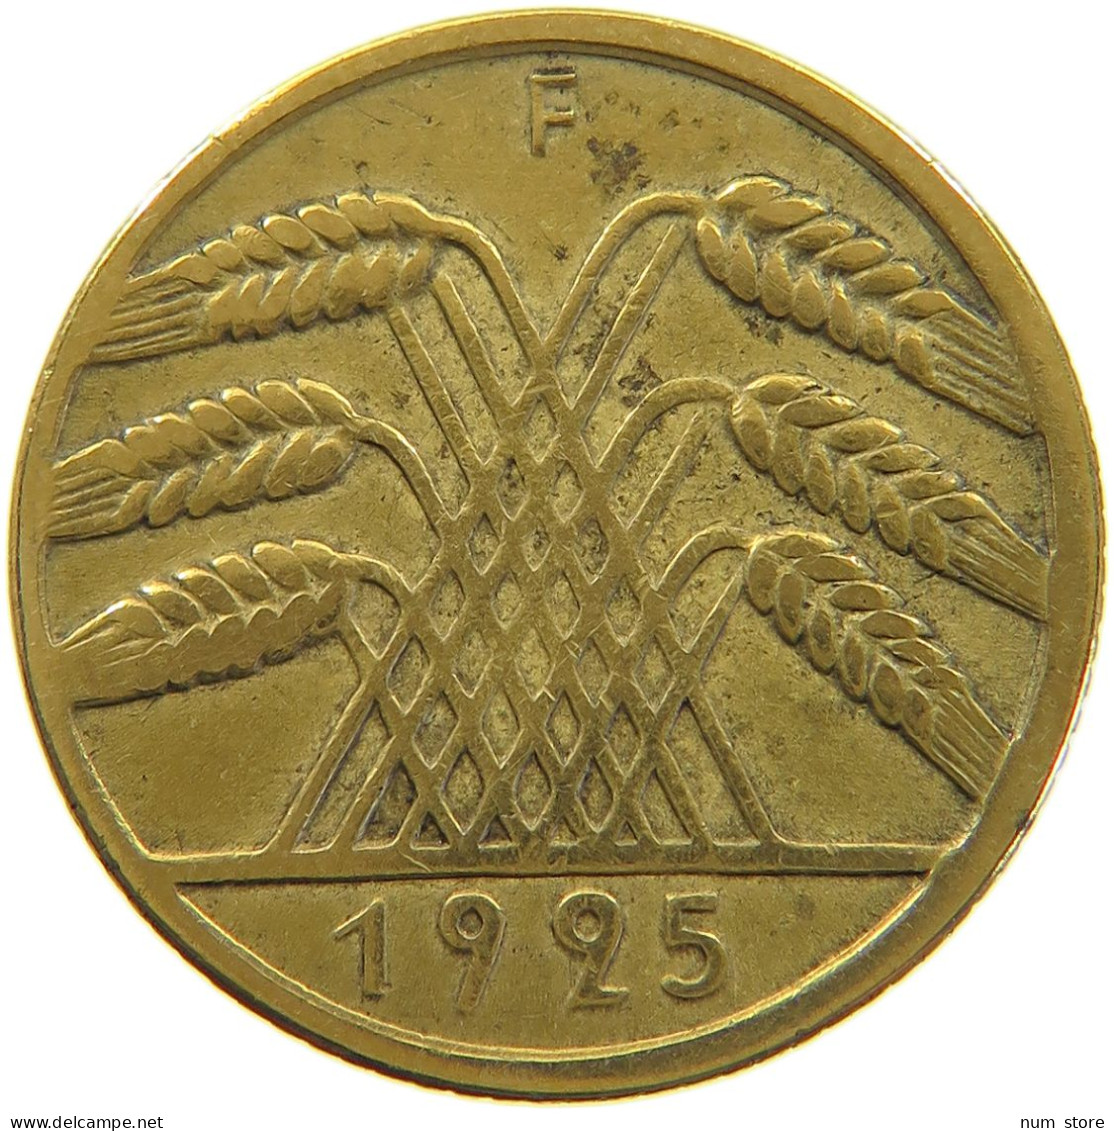 WEIMARER REPUBLIK 10 PFENNIG 1925 F PLANCHET ERROR #a074 0285 - 10 Rentenpfennig & 10 Reichspfennig